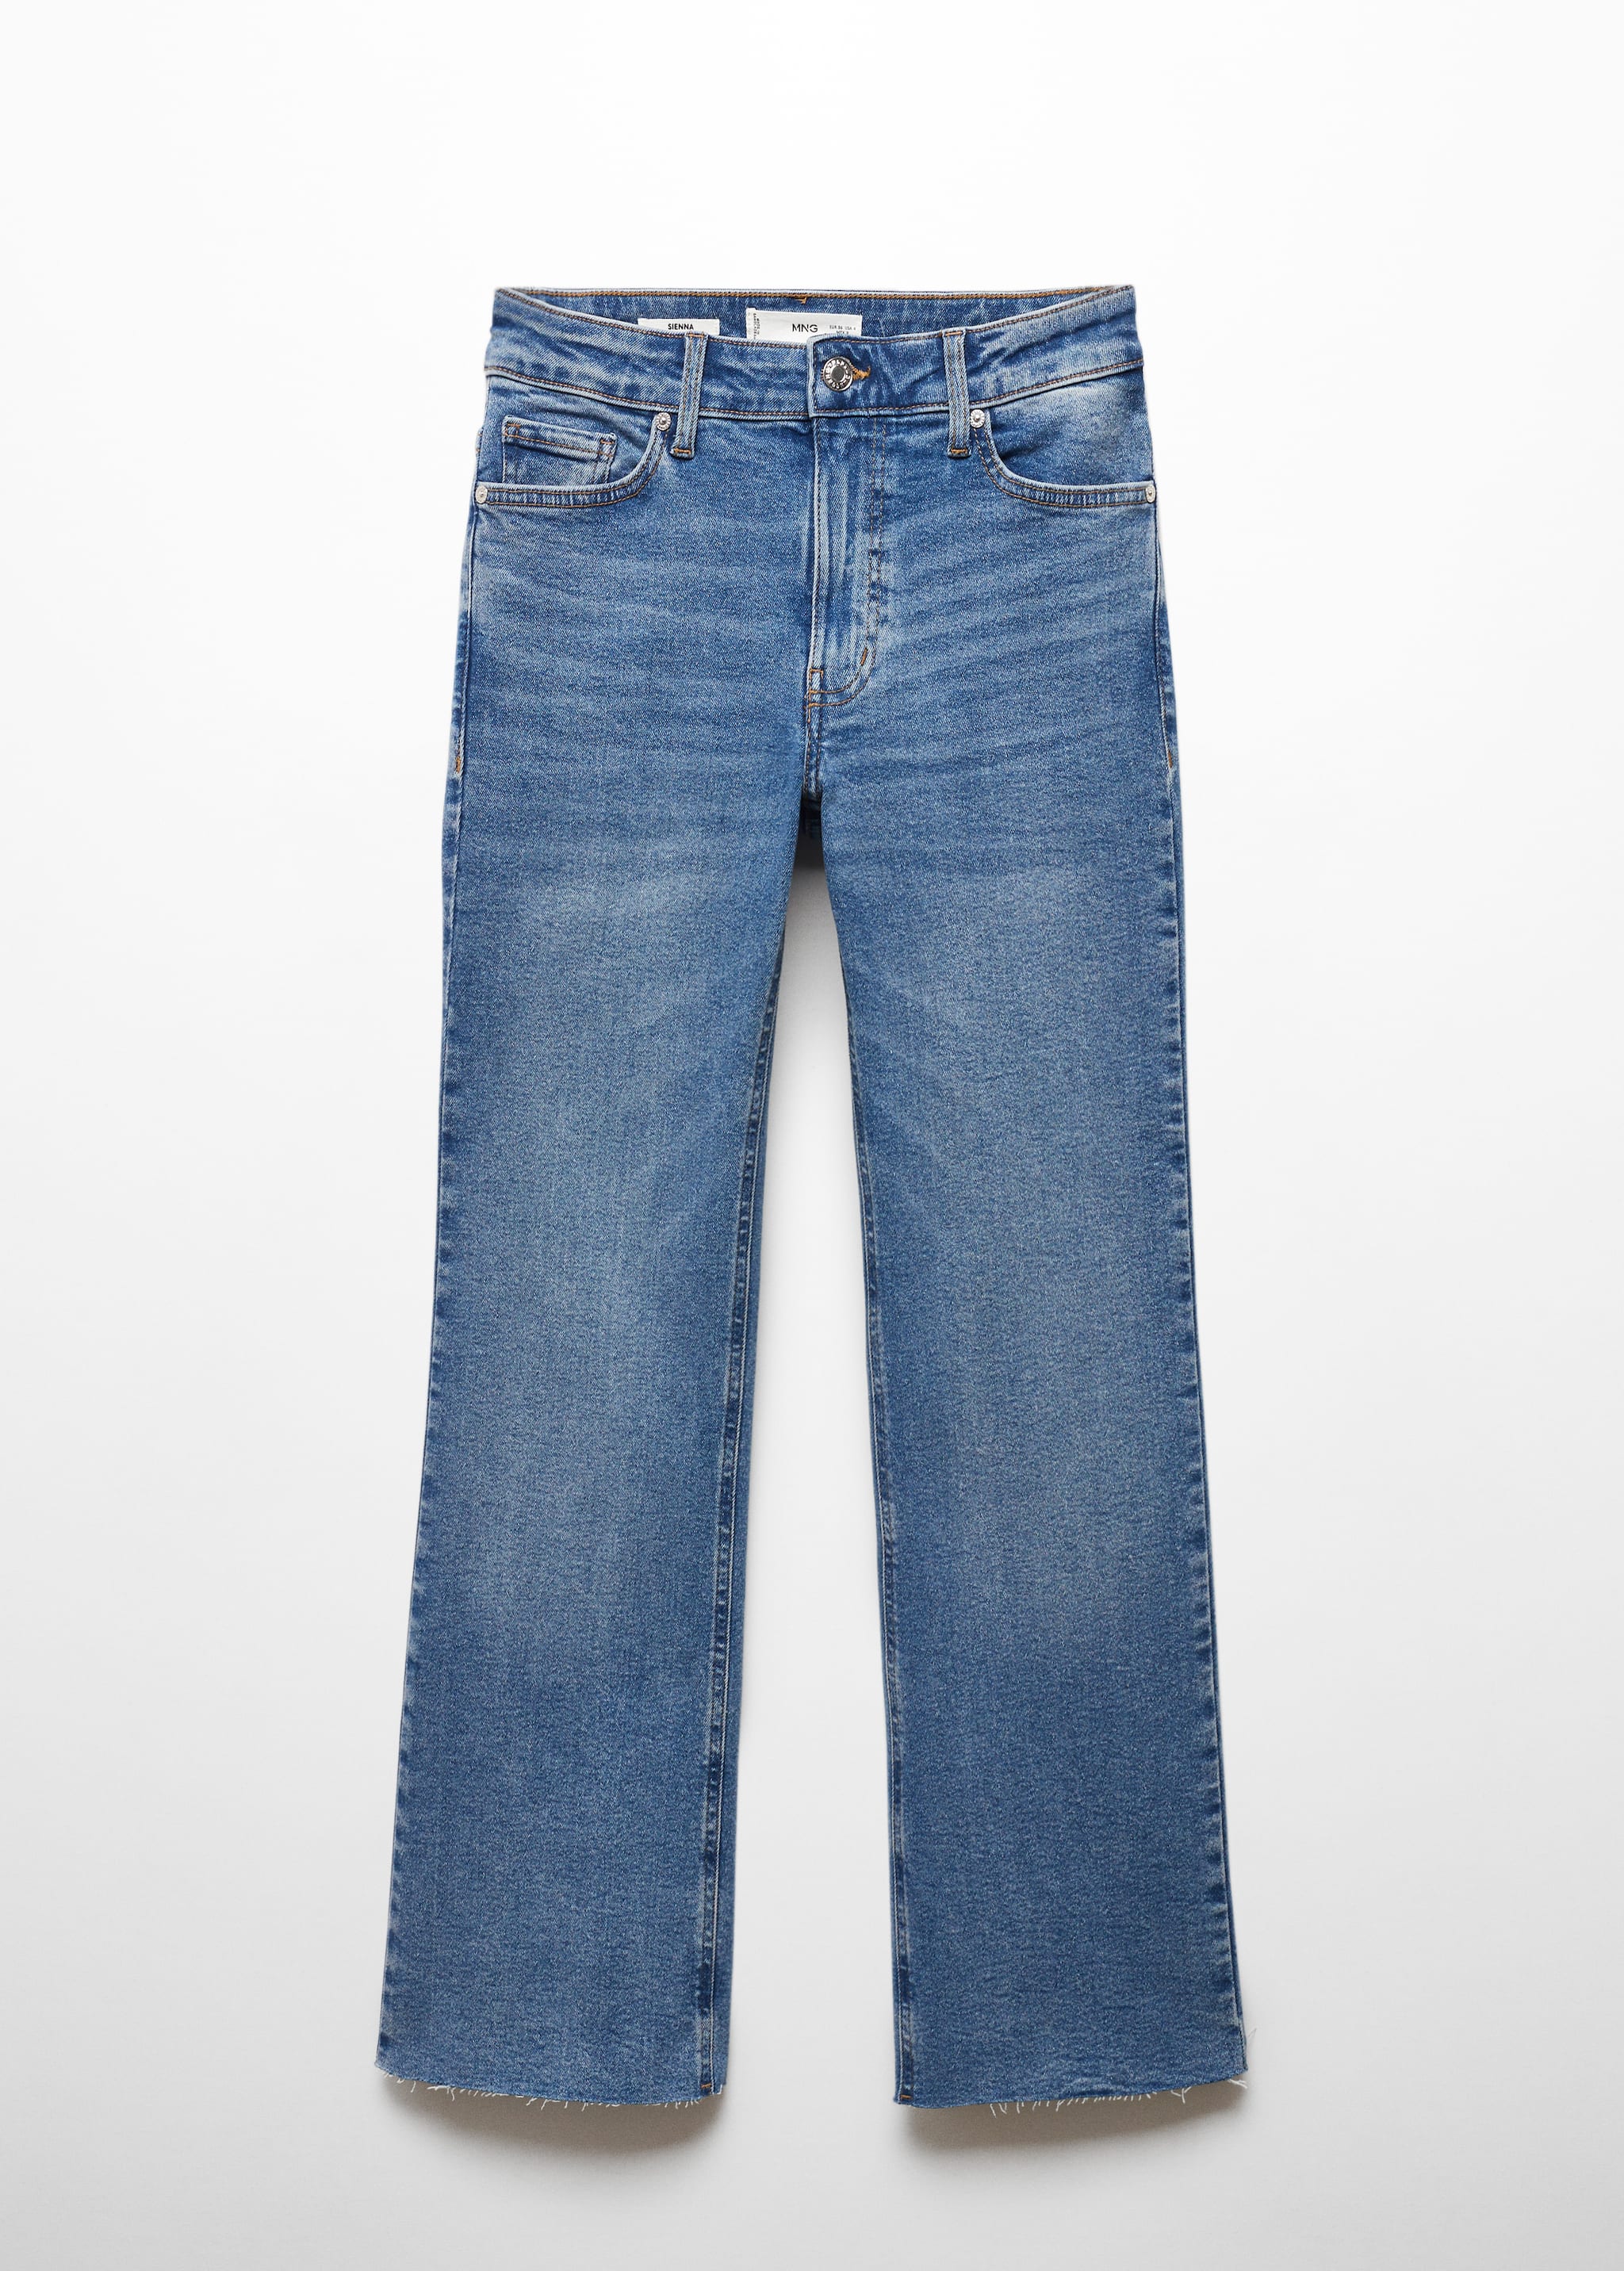 Укороченные джинсы flare - Изделие без модели